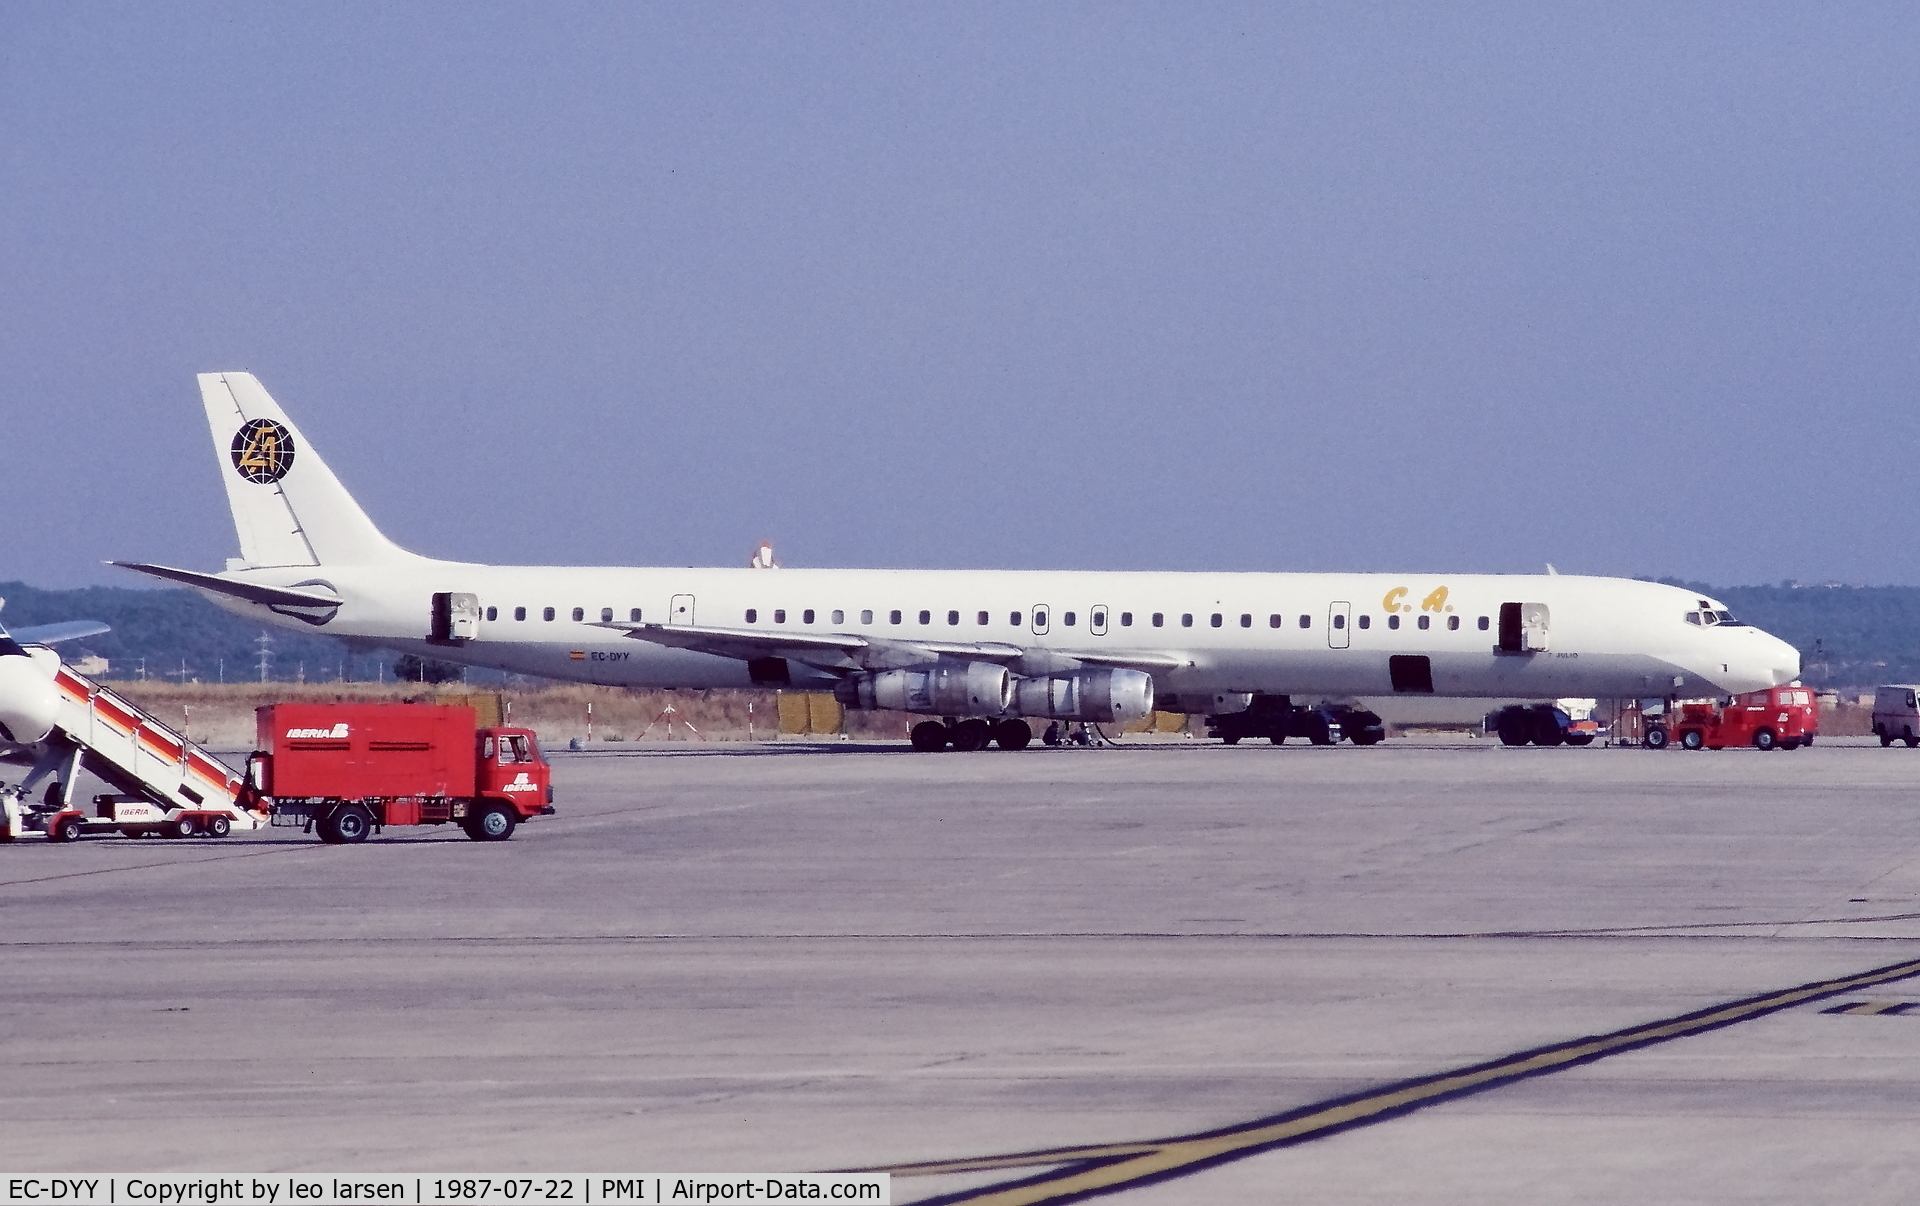 EC-DYY, 1967 Douglas DC-8-61F C/N 45888, Palma de Mallorca 22.7.1987